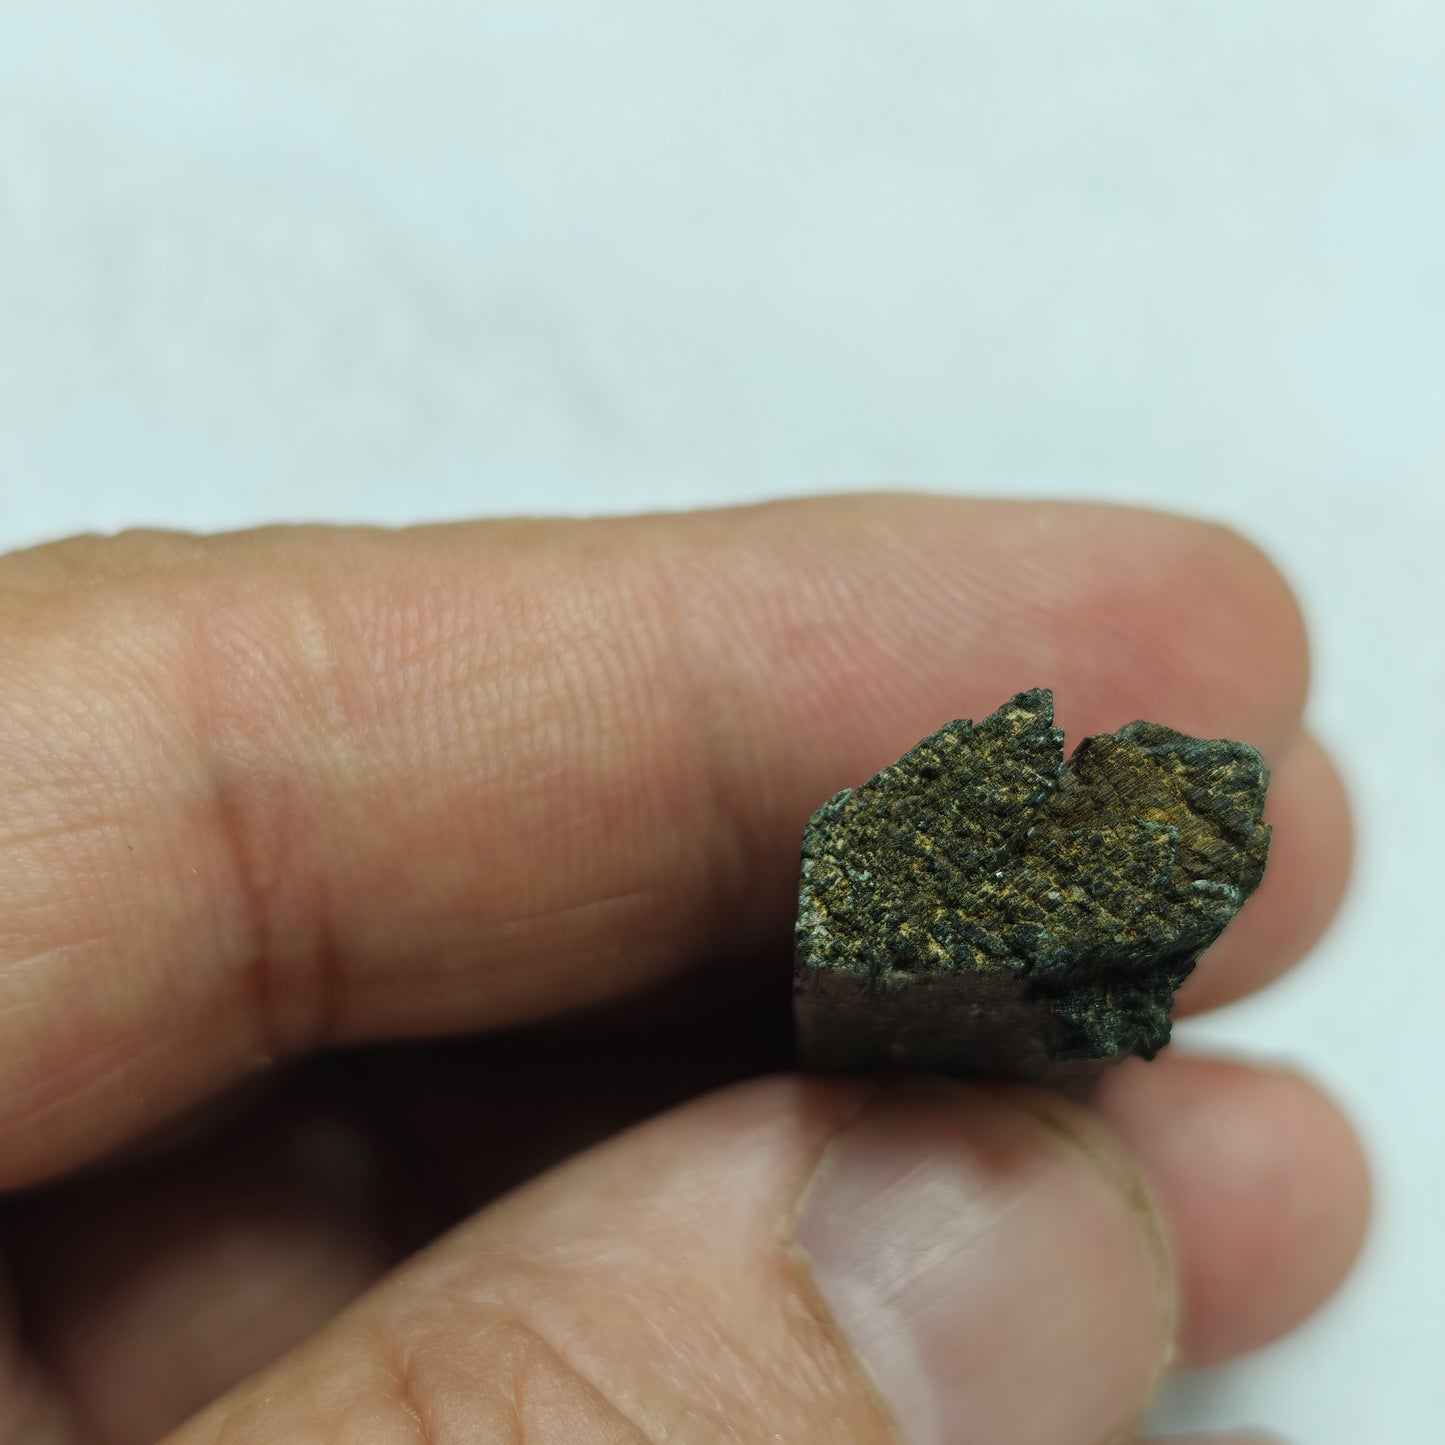 Natural aegirine crystal 13 grams